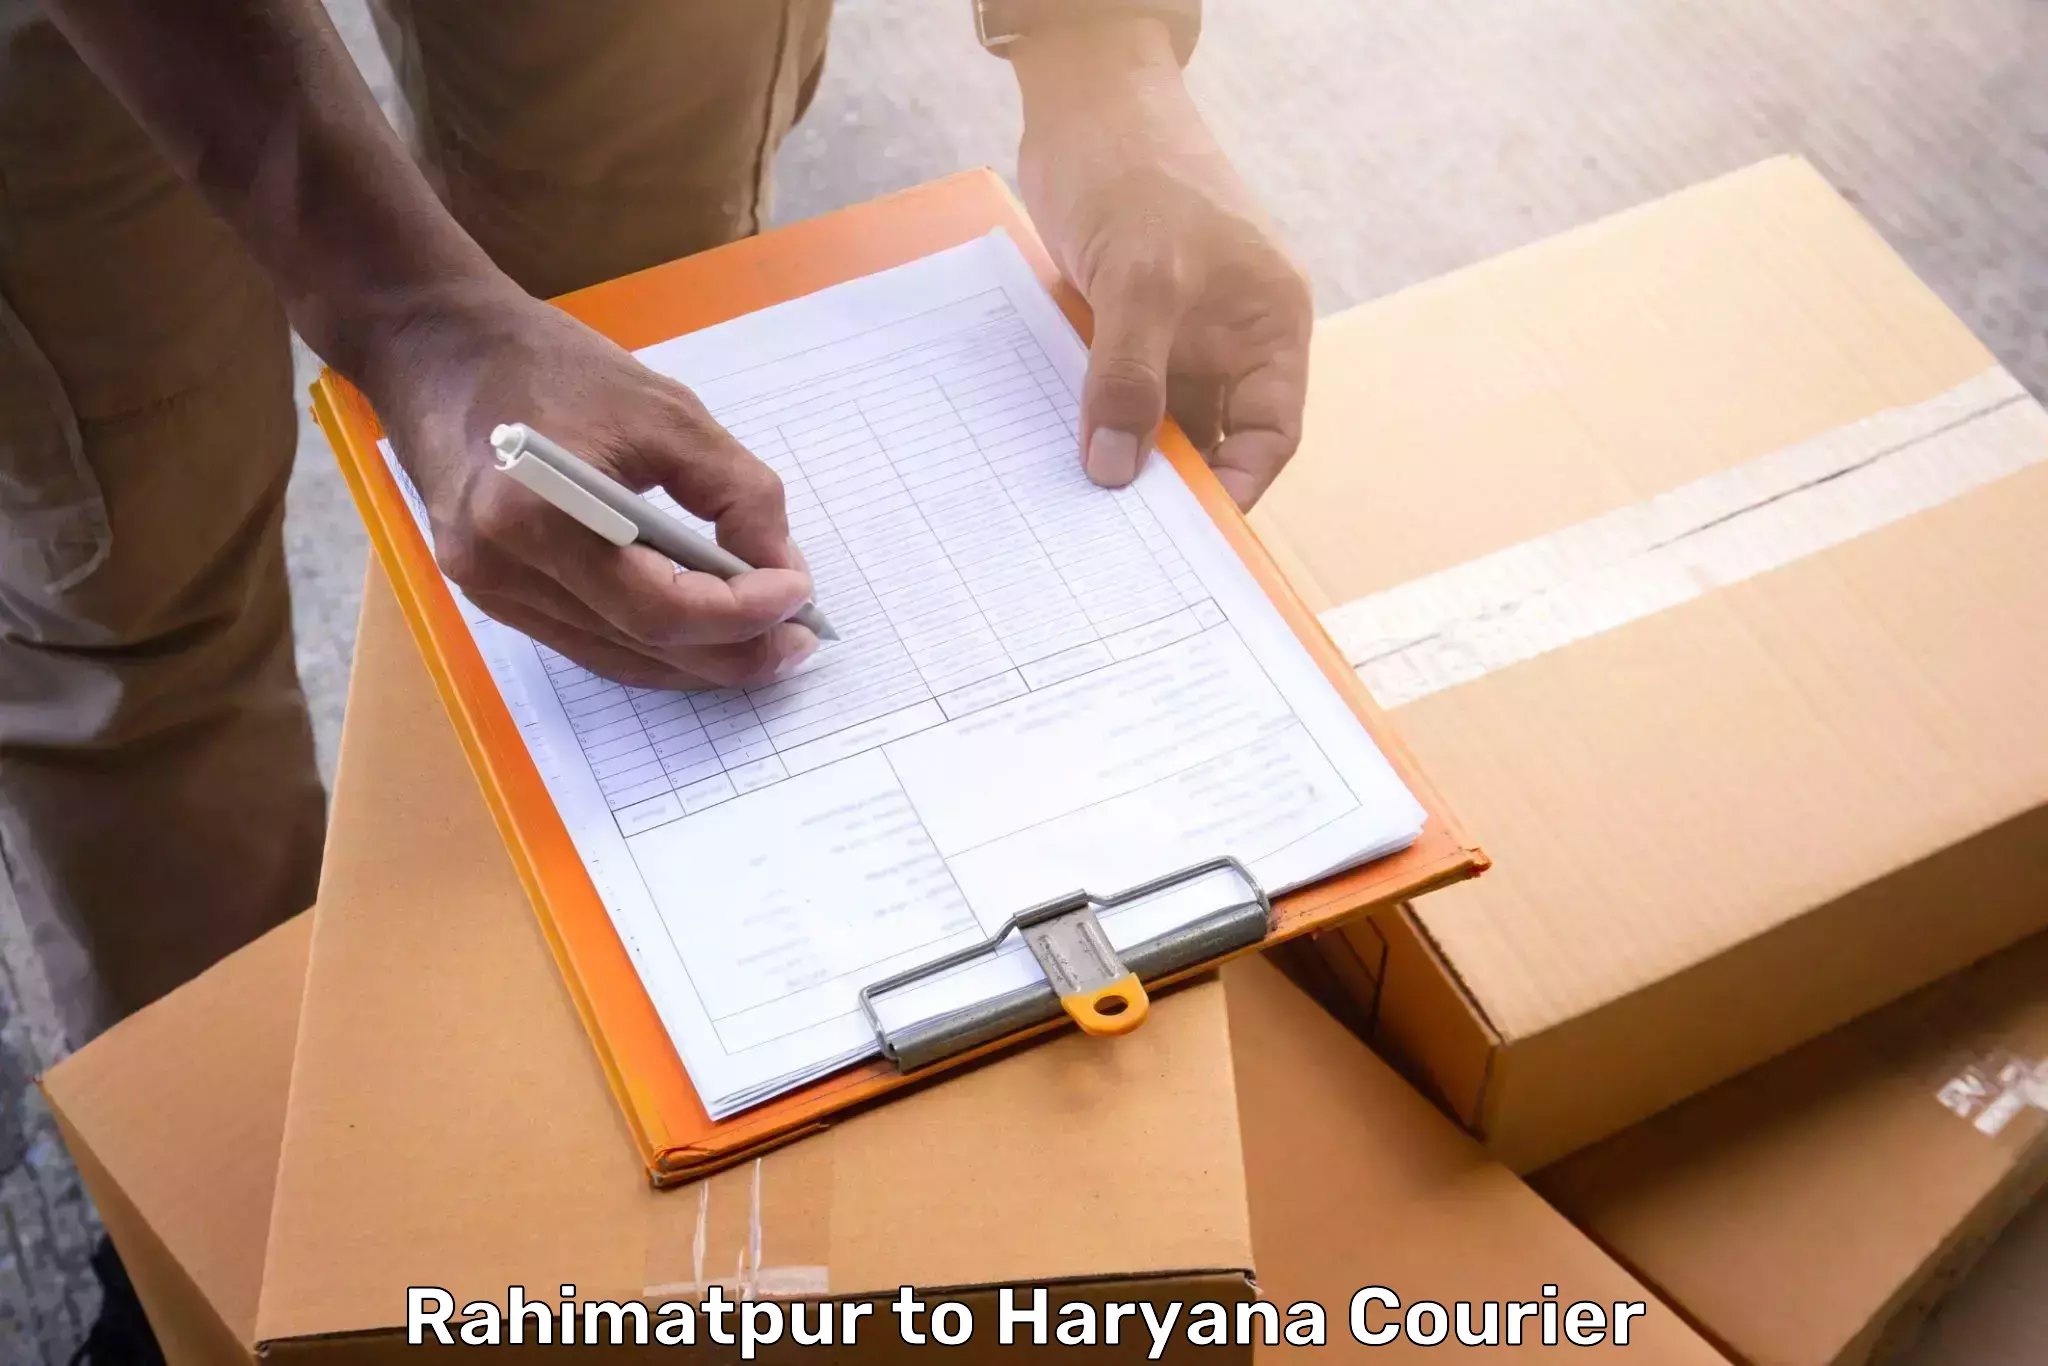 Urgent luggage shipment Rahimatpur to Fatehabad